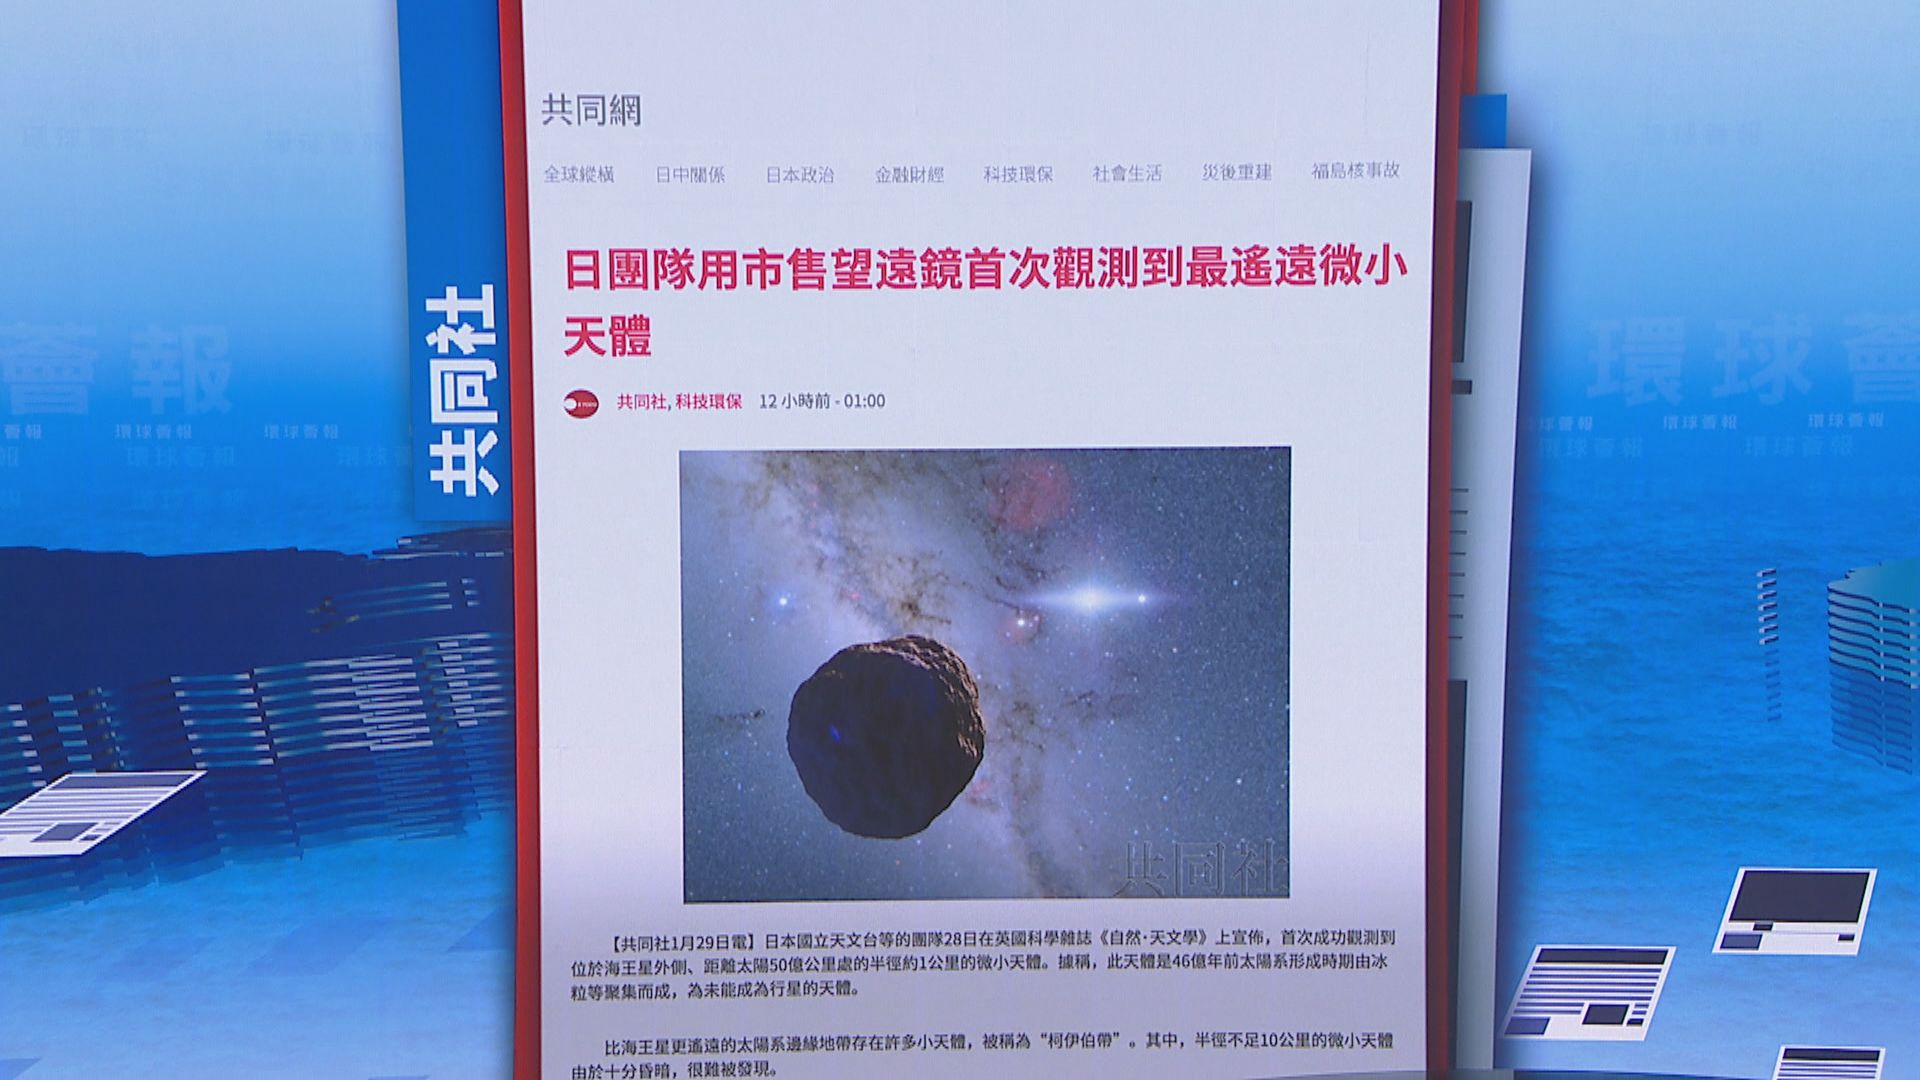 【環球薈報】日本團隊首次觀測到最遠微小天體